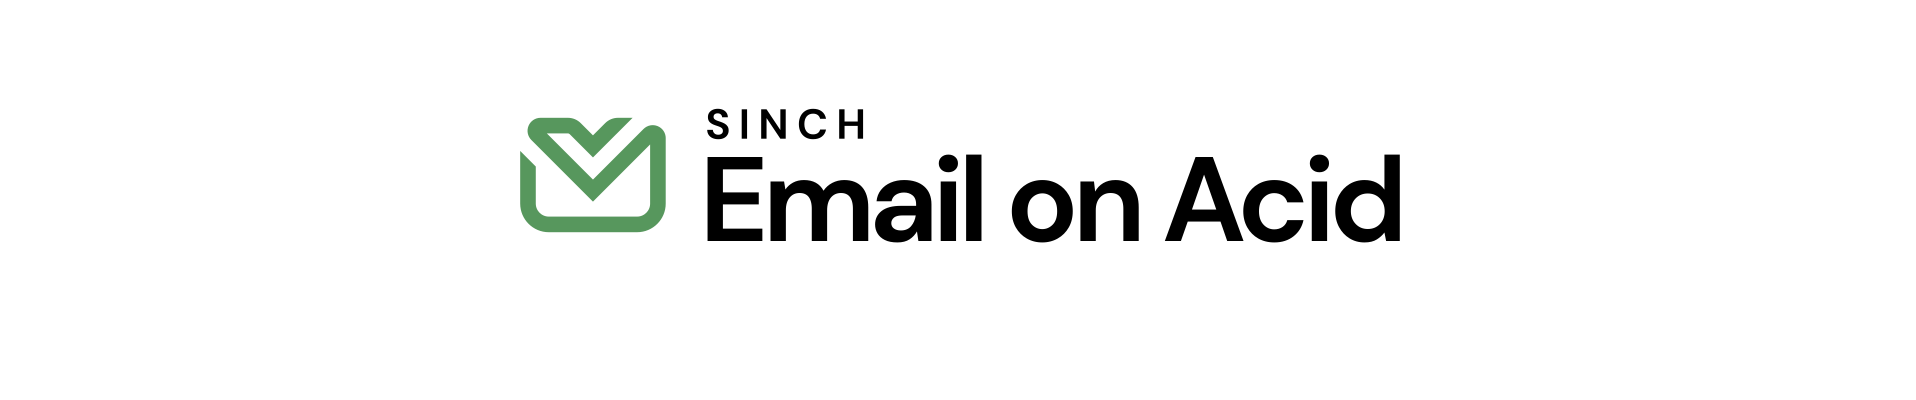 Email on Acid Logo